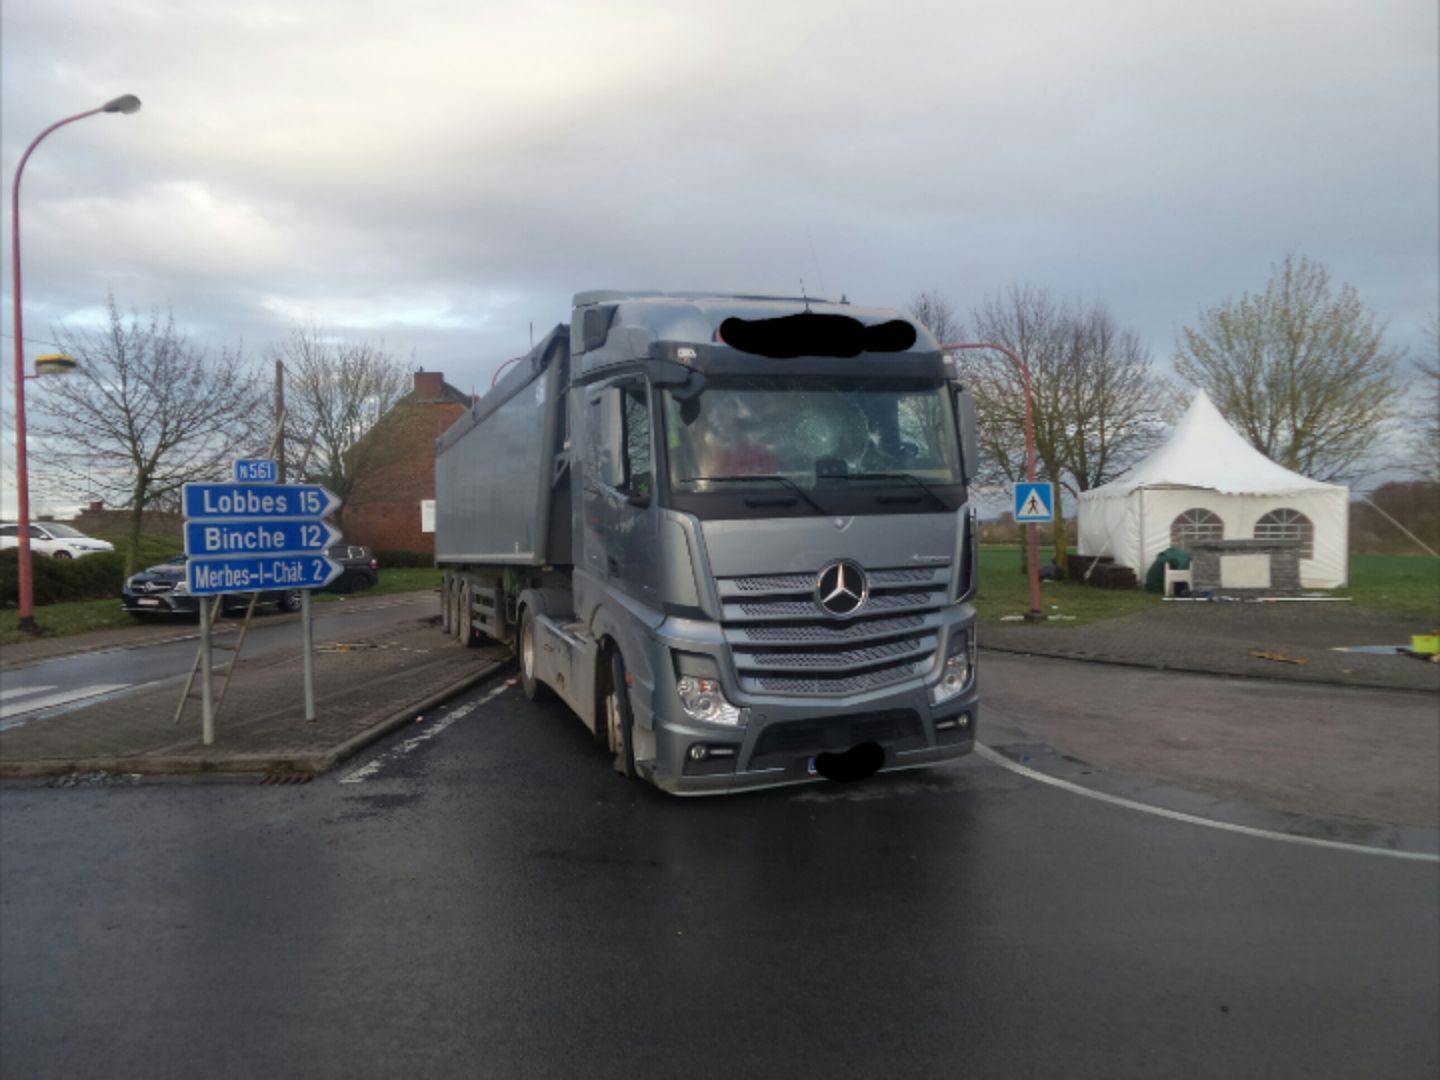 05/04/2016 - Hainaut : déclenchement PIM suite au blocage par les camions + photos Erqueline%20camion%20%203